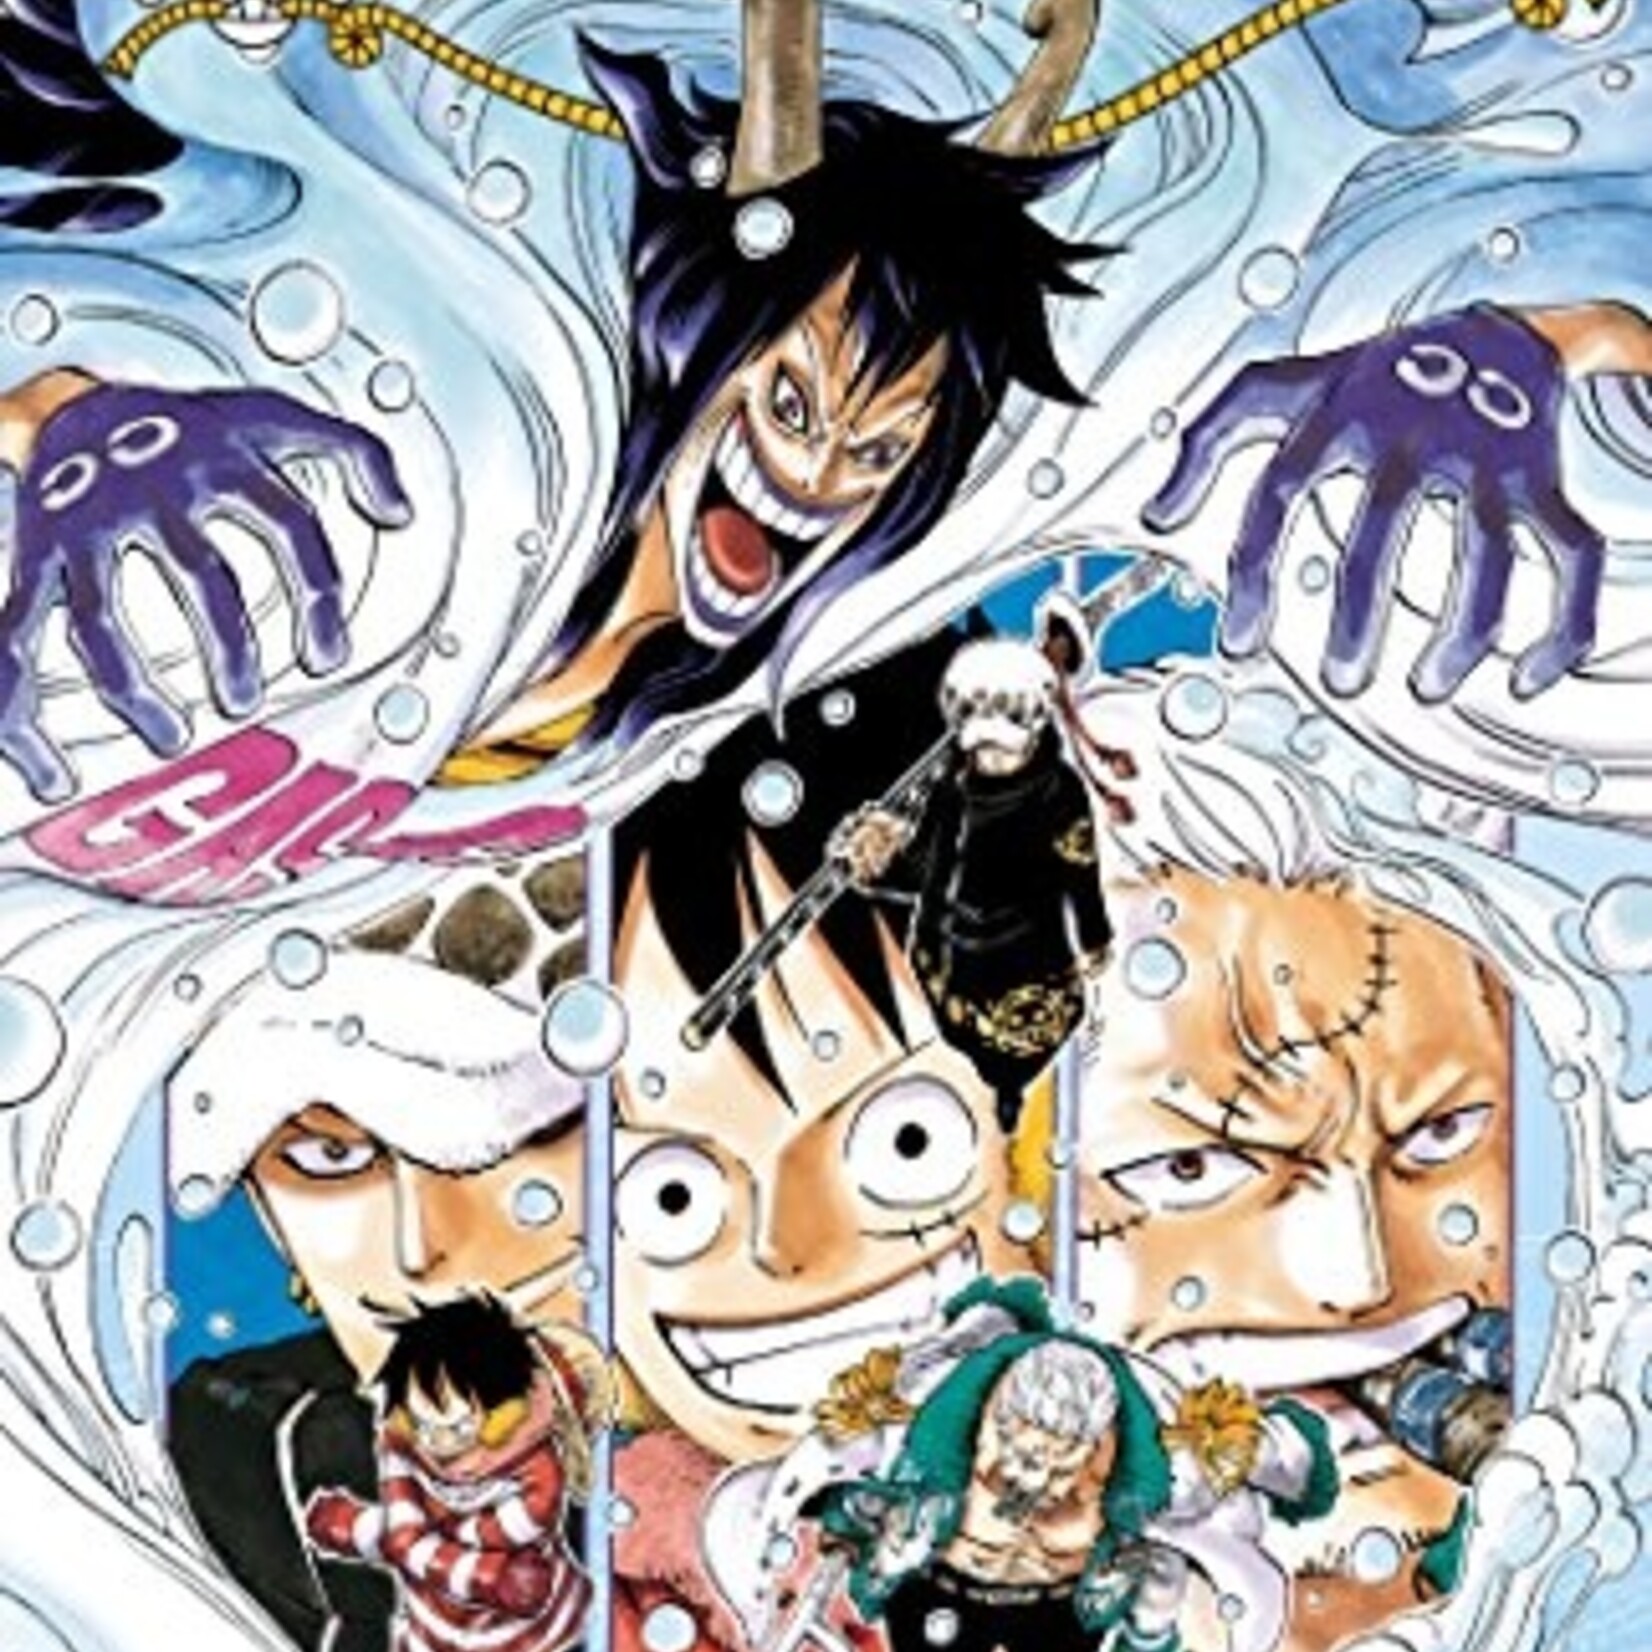 Glénat Manga - One Piece Tome 068